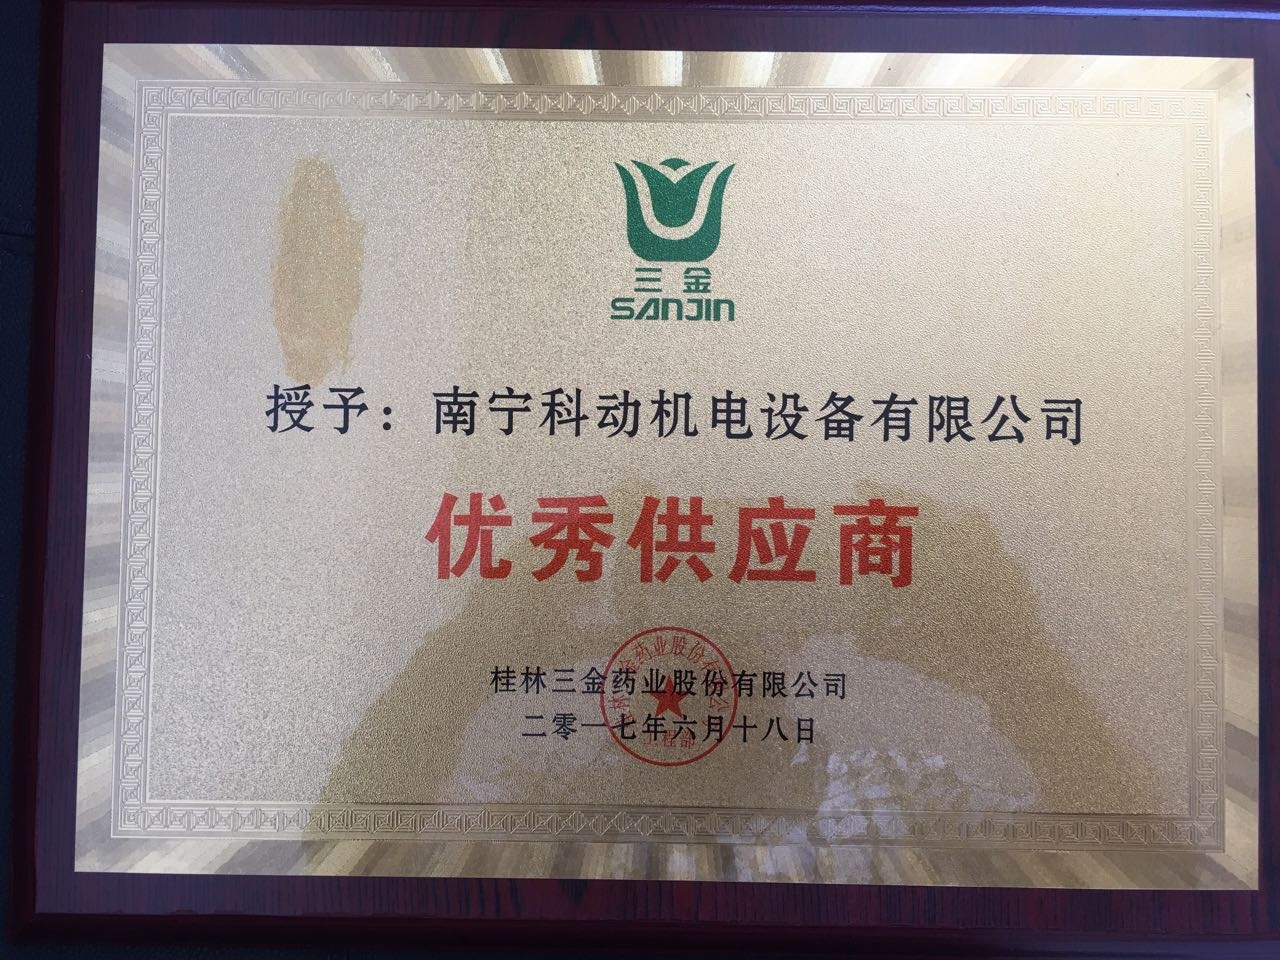 ”桂林三金“优秀供应商 荣誉证书